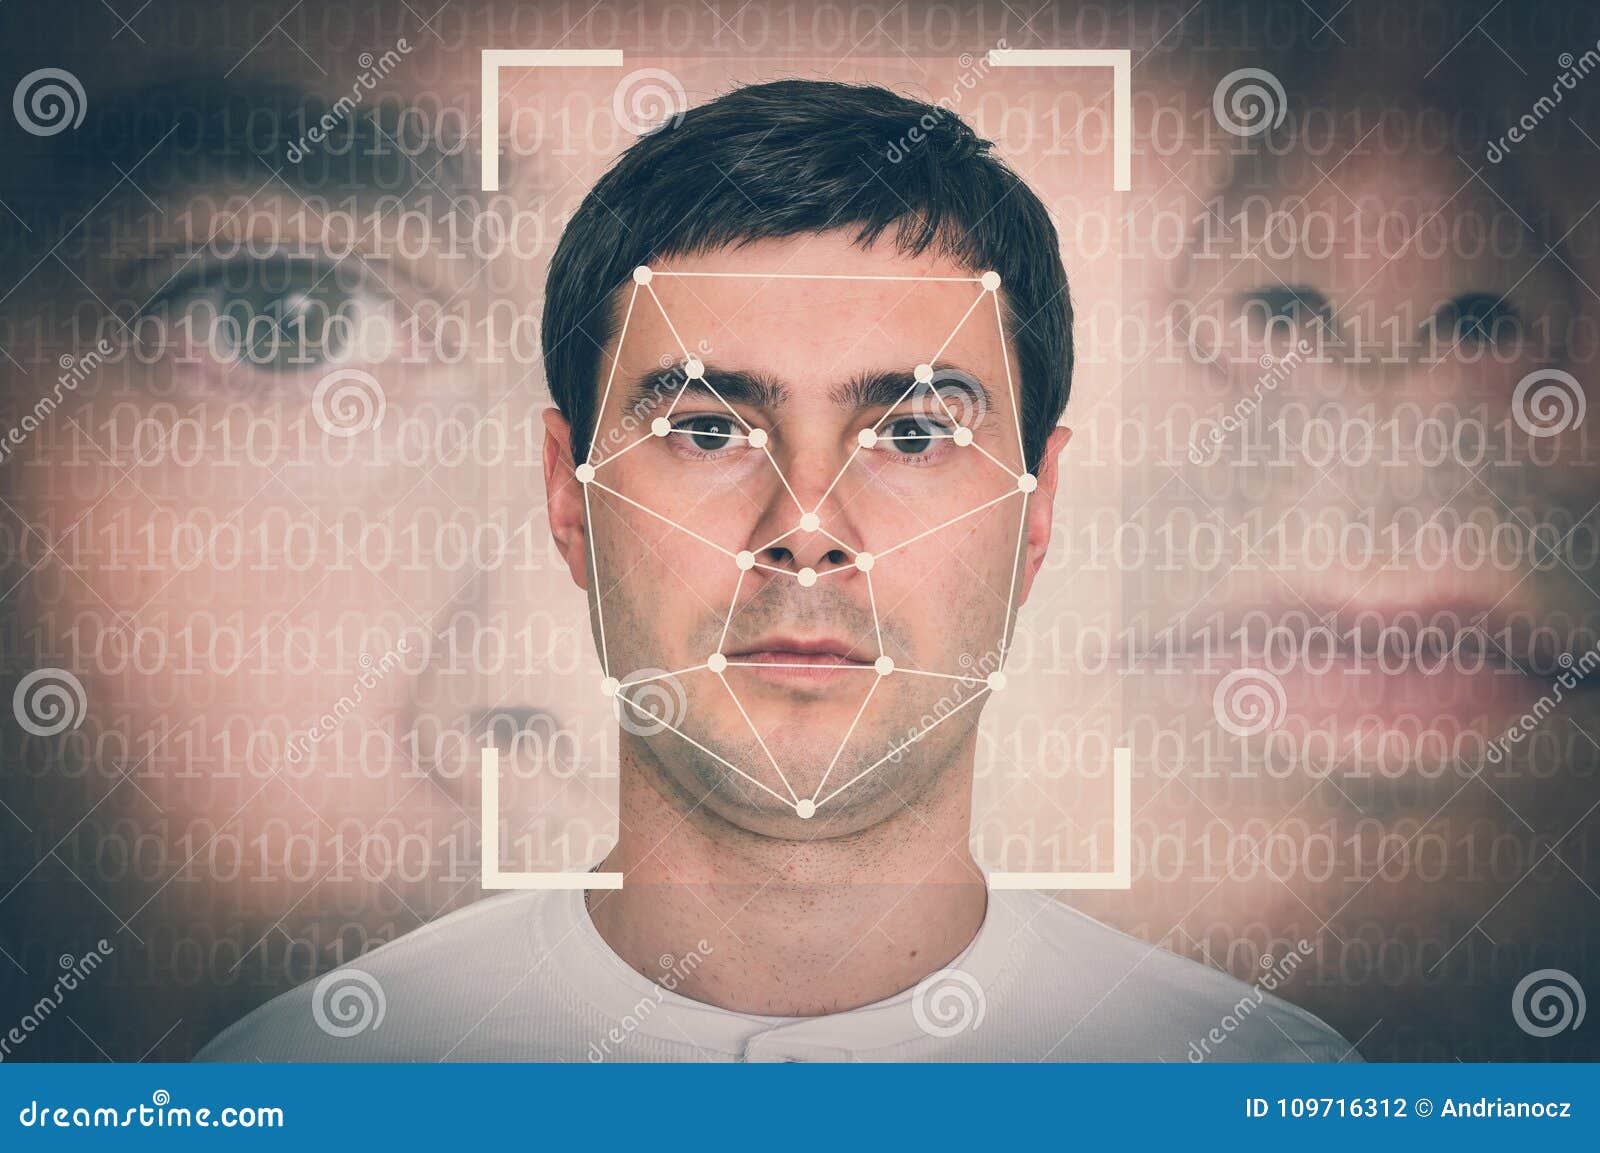 man face recognition - biometric verification concept